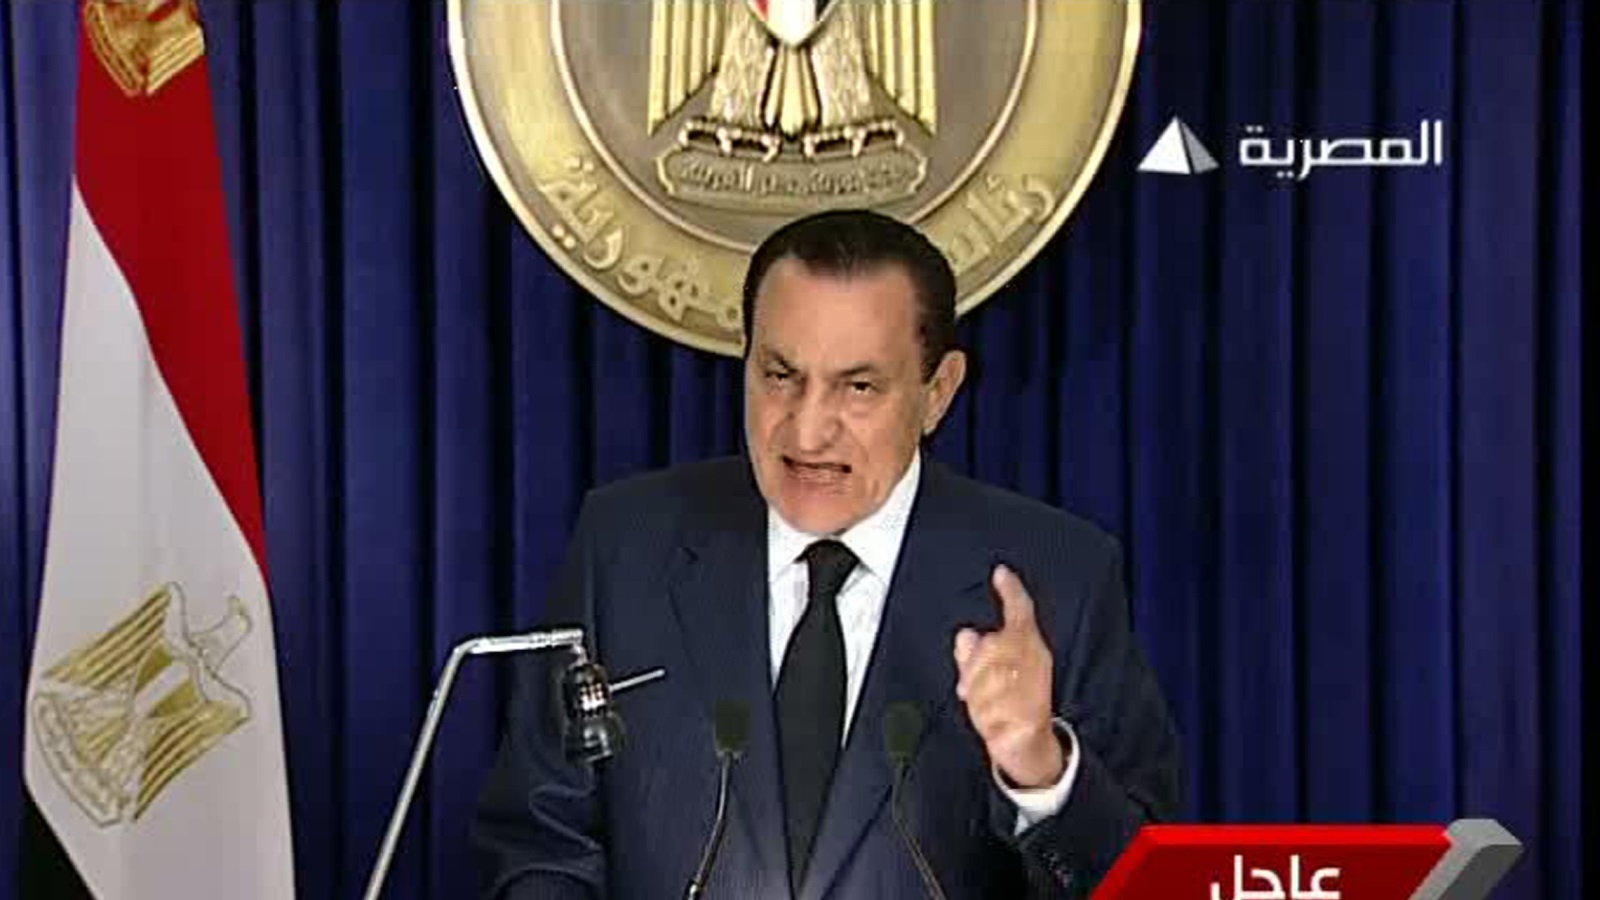 الخطاب الثاني لمبارك الذي رفض فيه الرحيل عن الحكم وخير المتظاهرين بين الاستقرار والفوضى رويترز